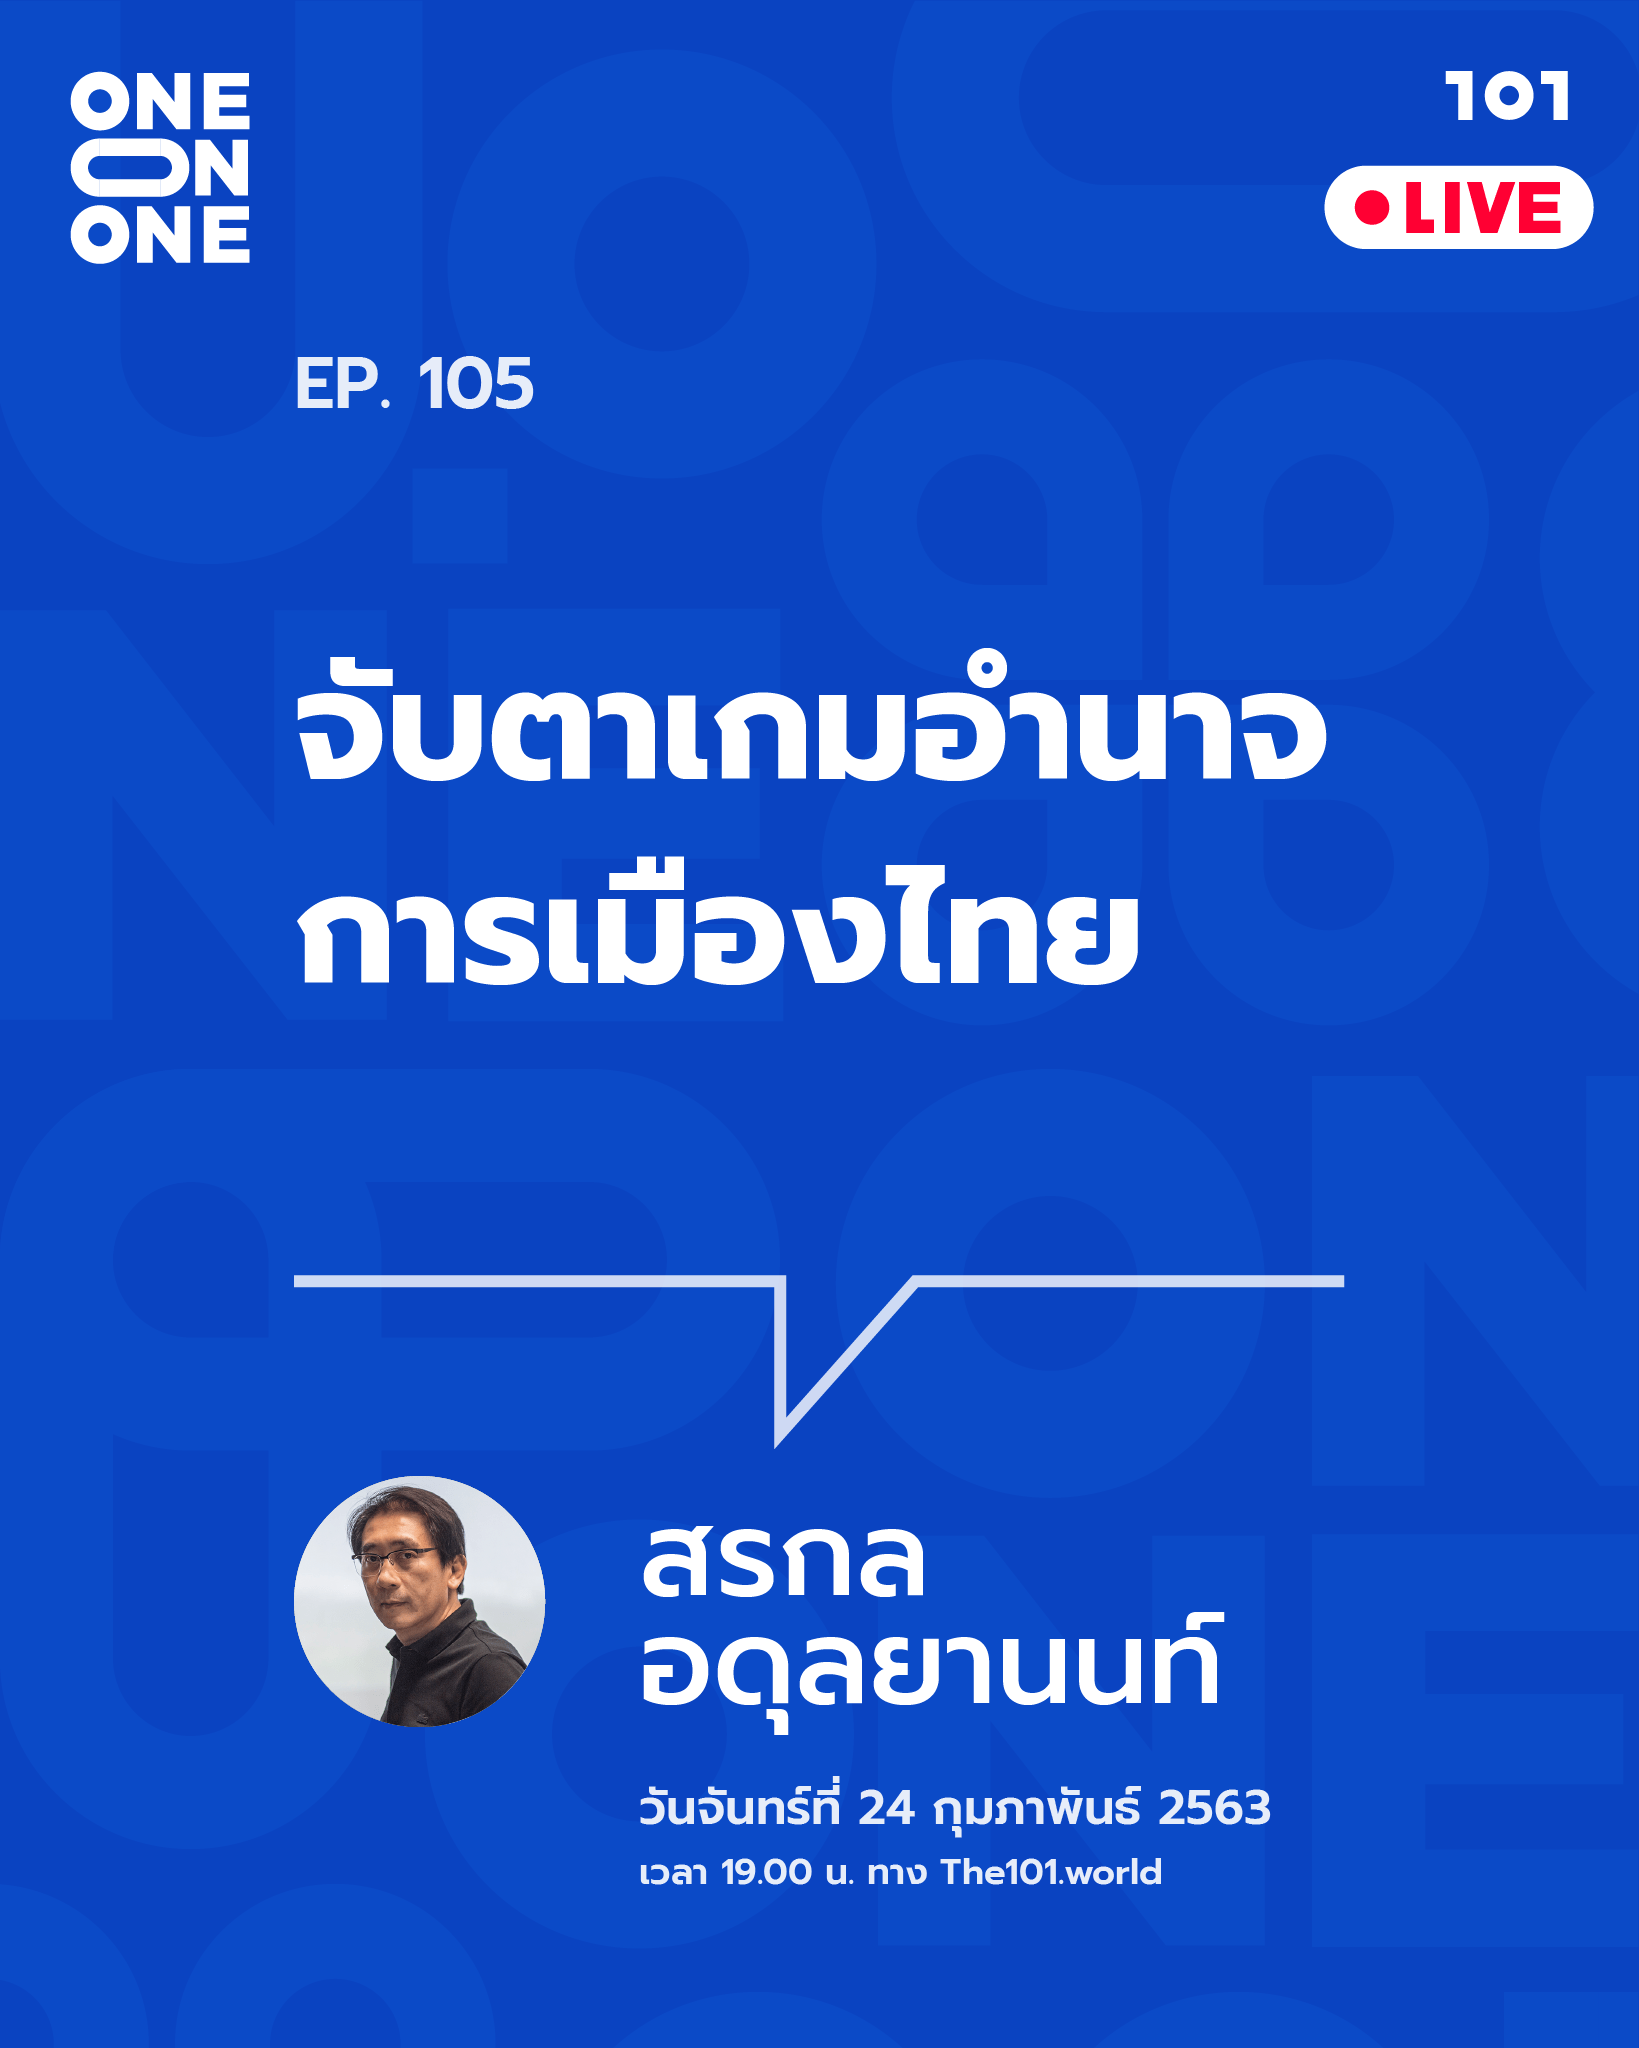 101 One-on-One ep.105 “จับตาเกมอำนาจการเมืองไทย” กับ สรกล อดุลยานนท์